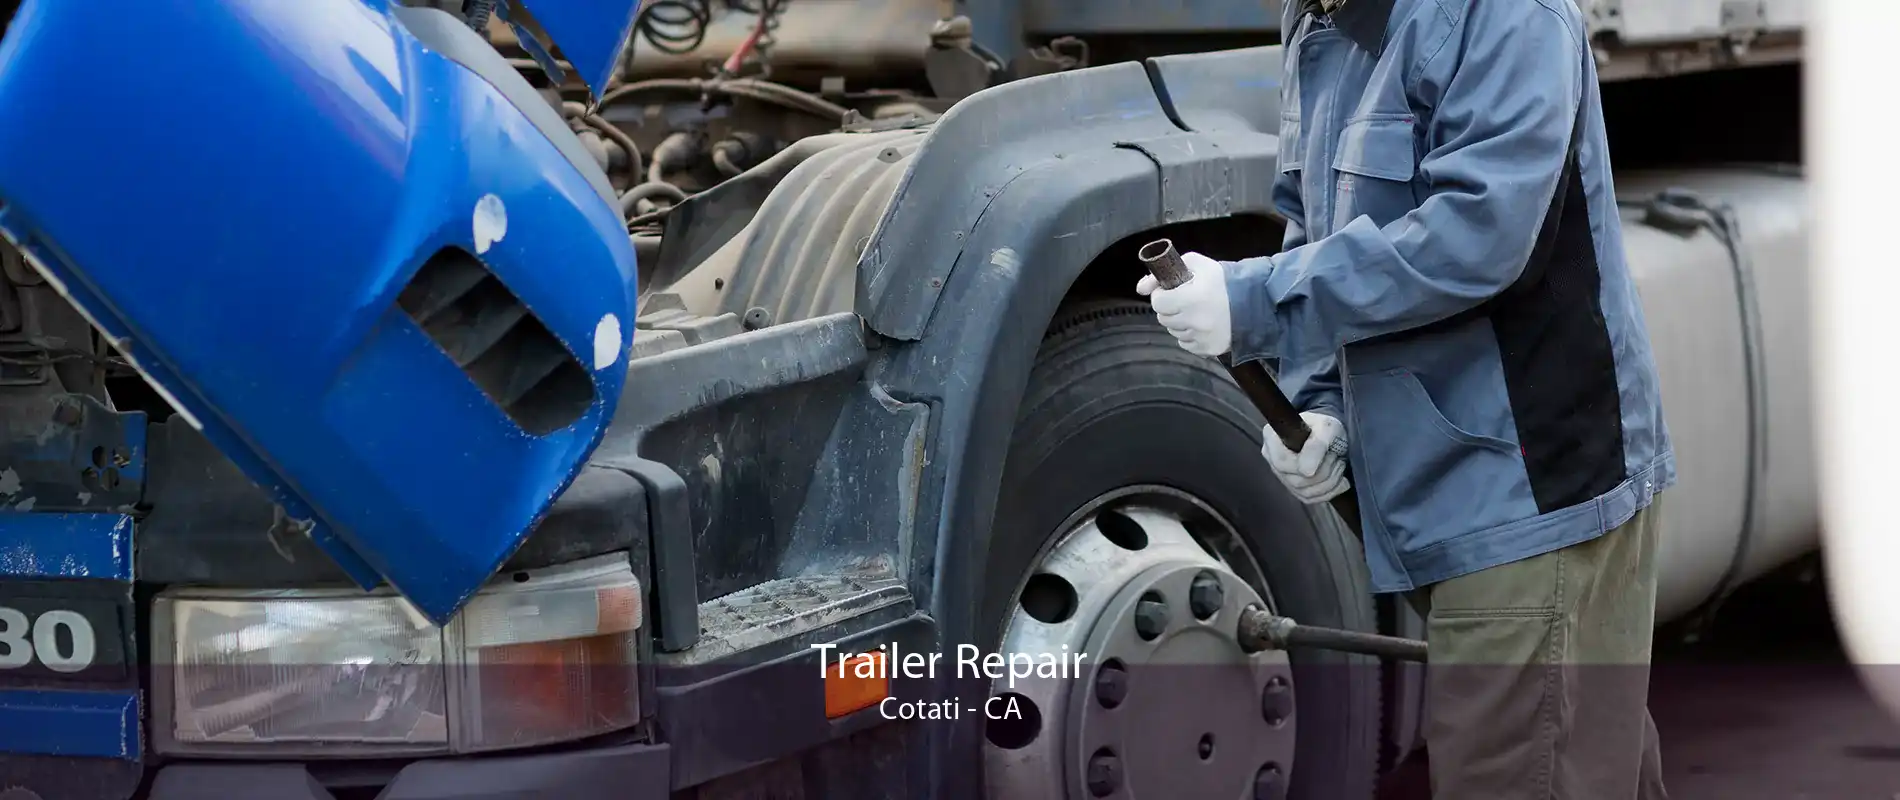 Trailer Repair Cotati - CA